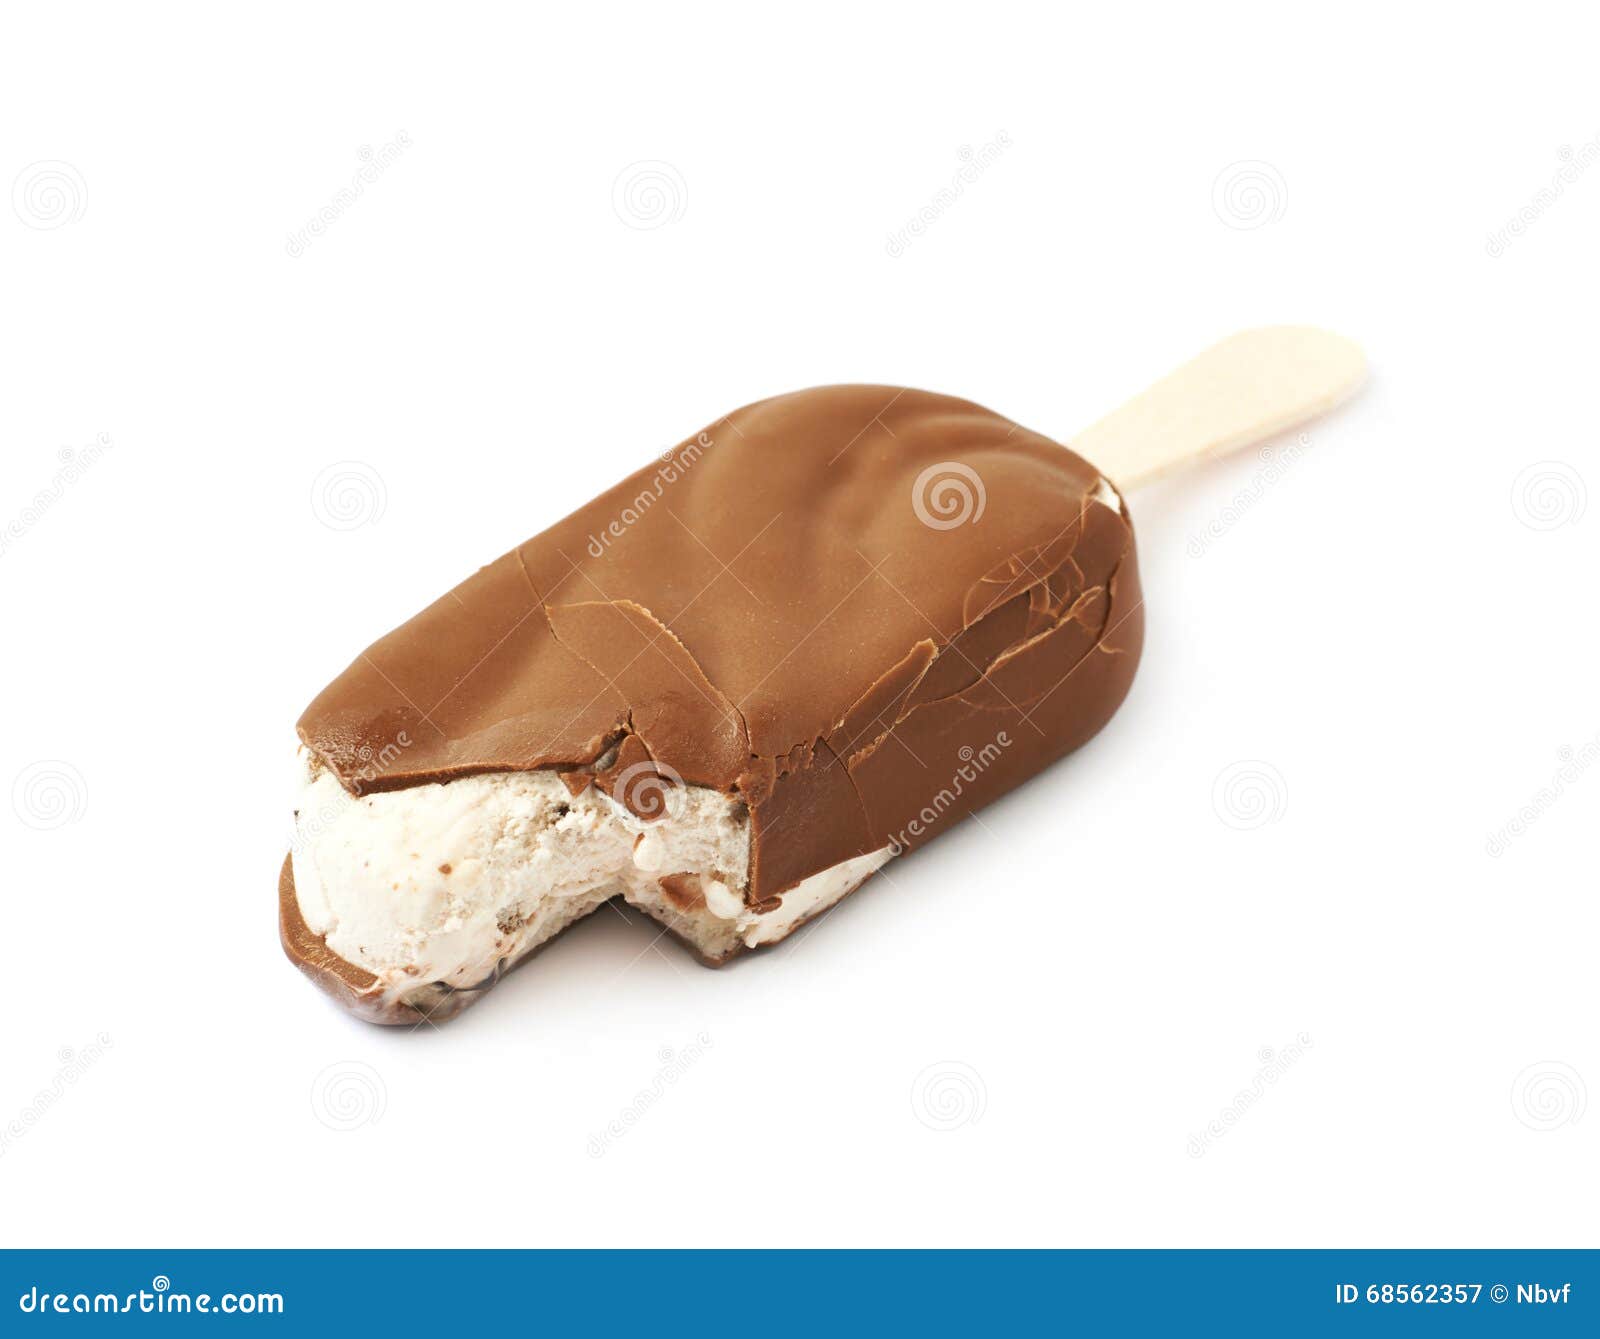 Vanilla Ice Cream Bar on a Stick Stock Image - Image of vanilla, sweet ...